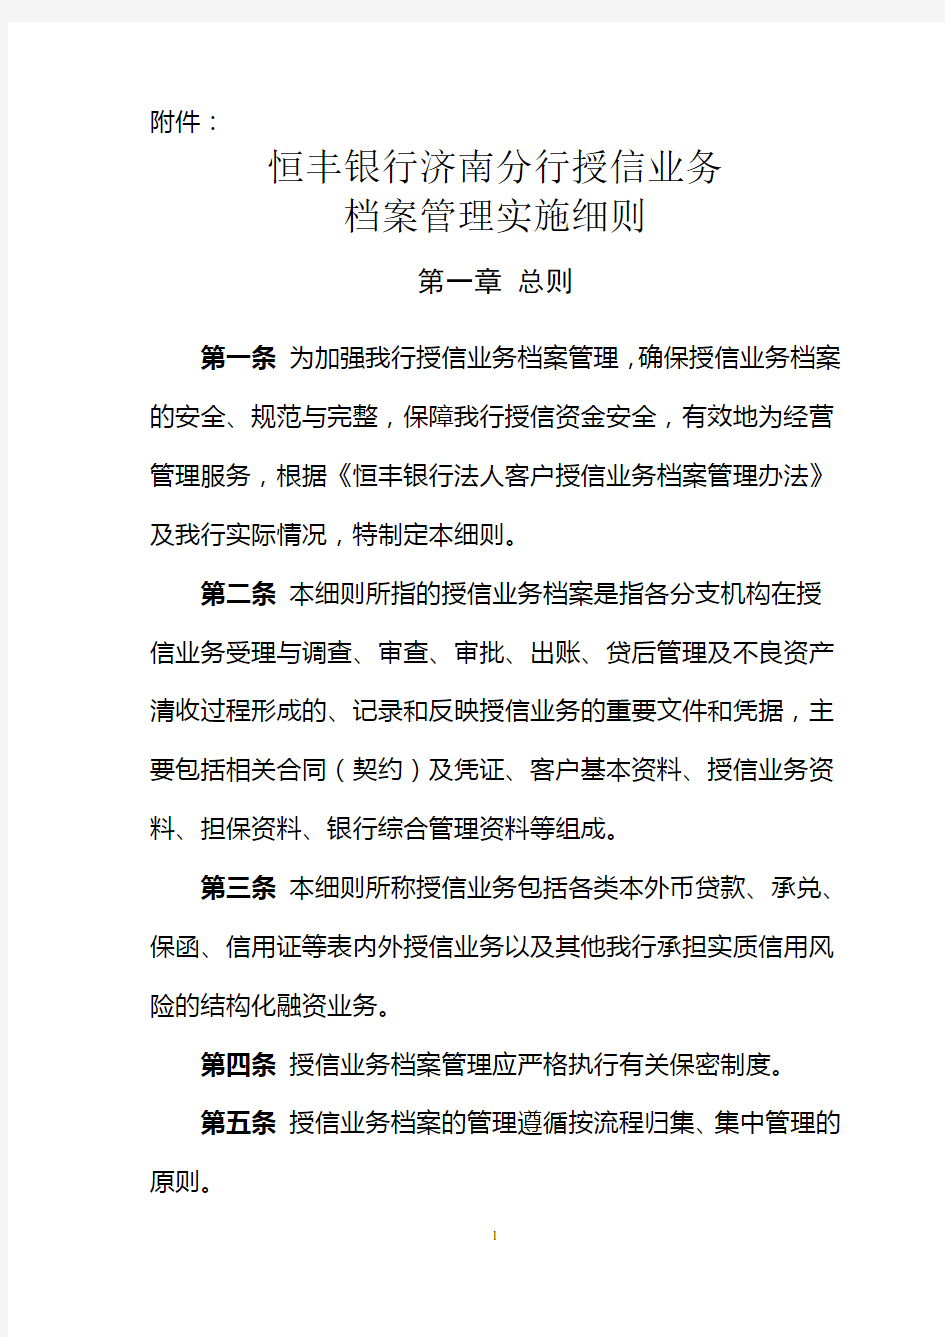 2015年5月29日济南分行授信档案管理细则